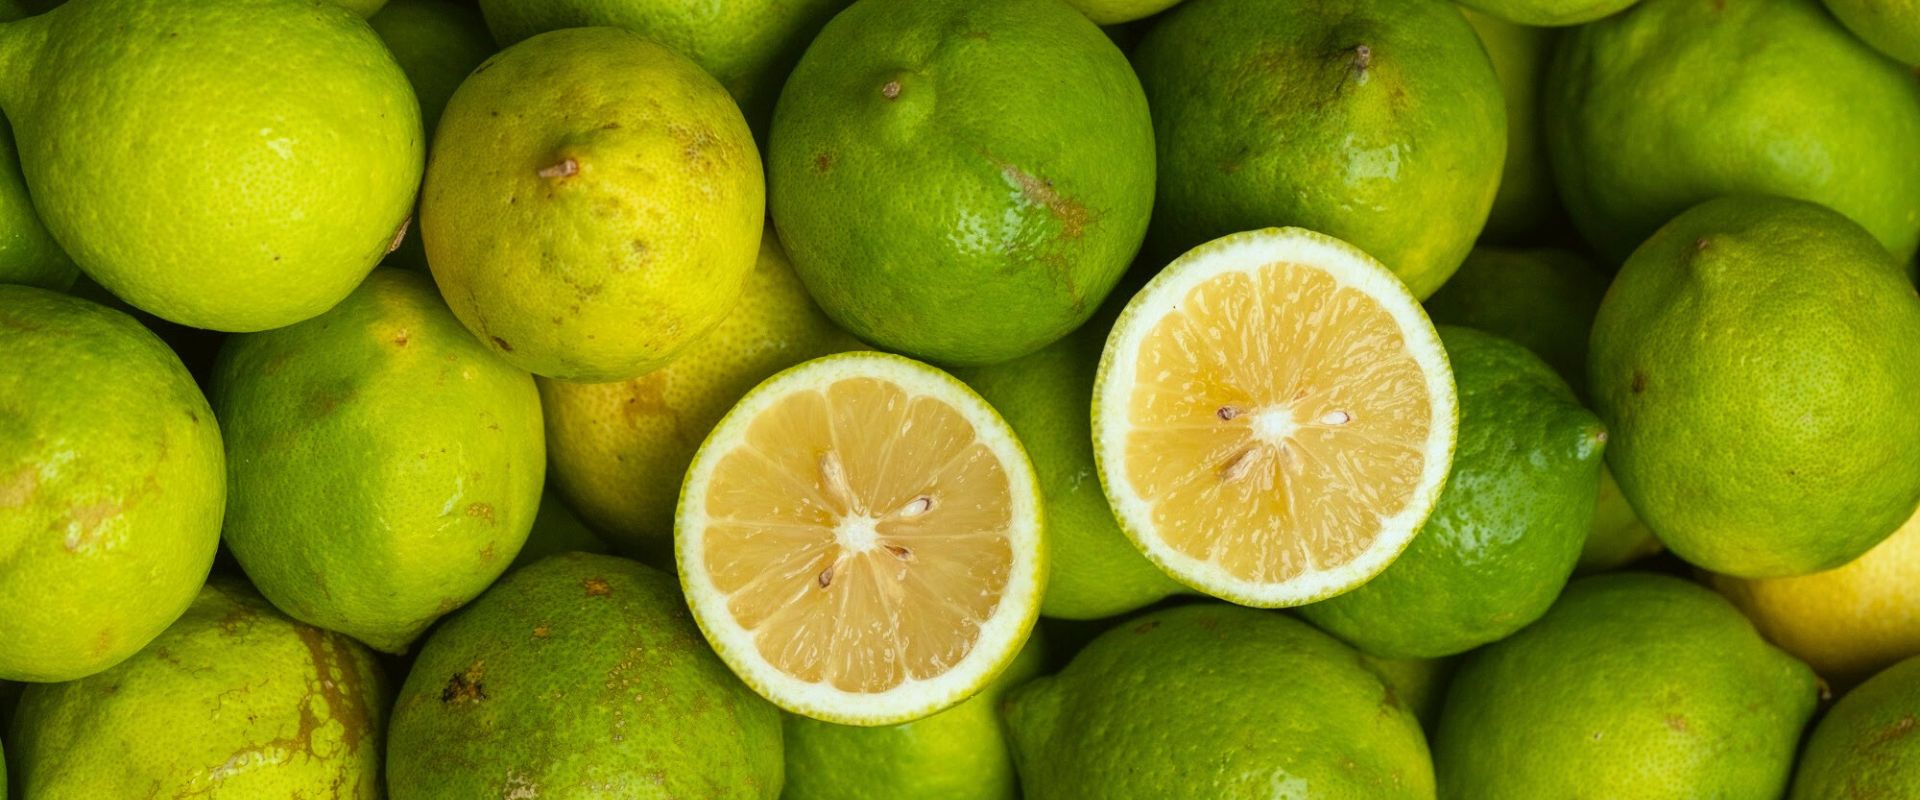 Warum sind Zitronen grün?